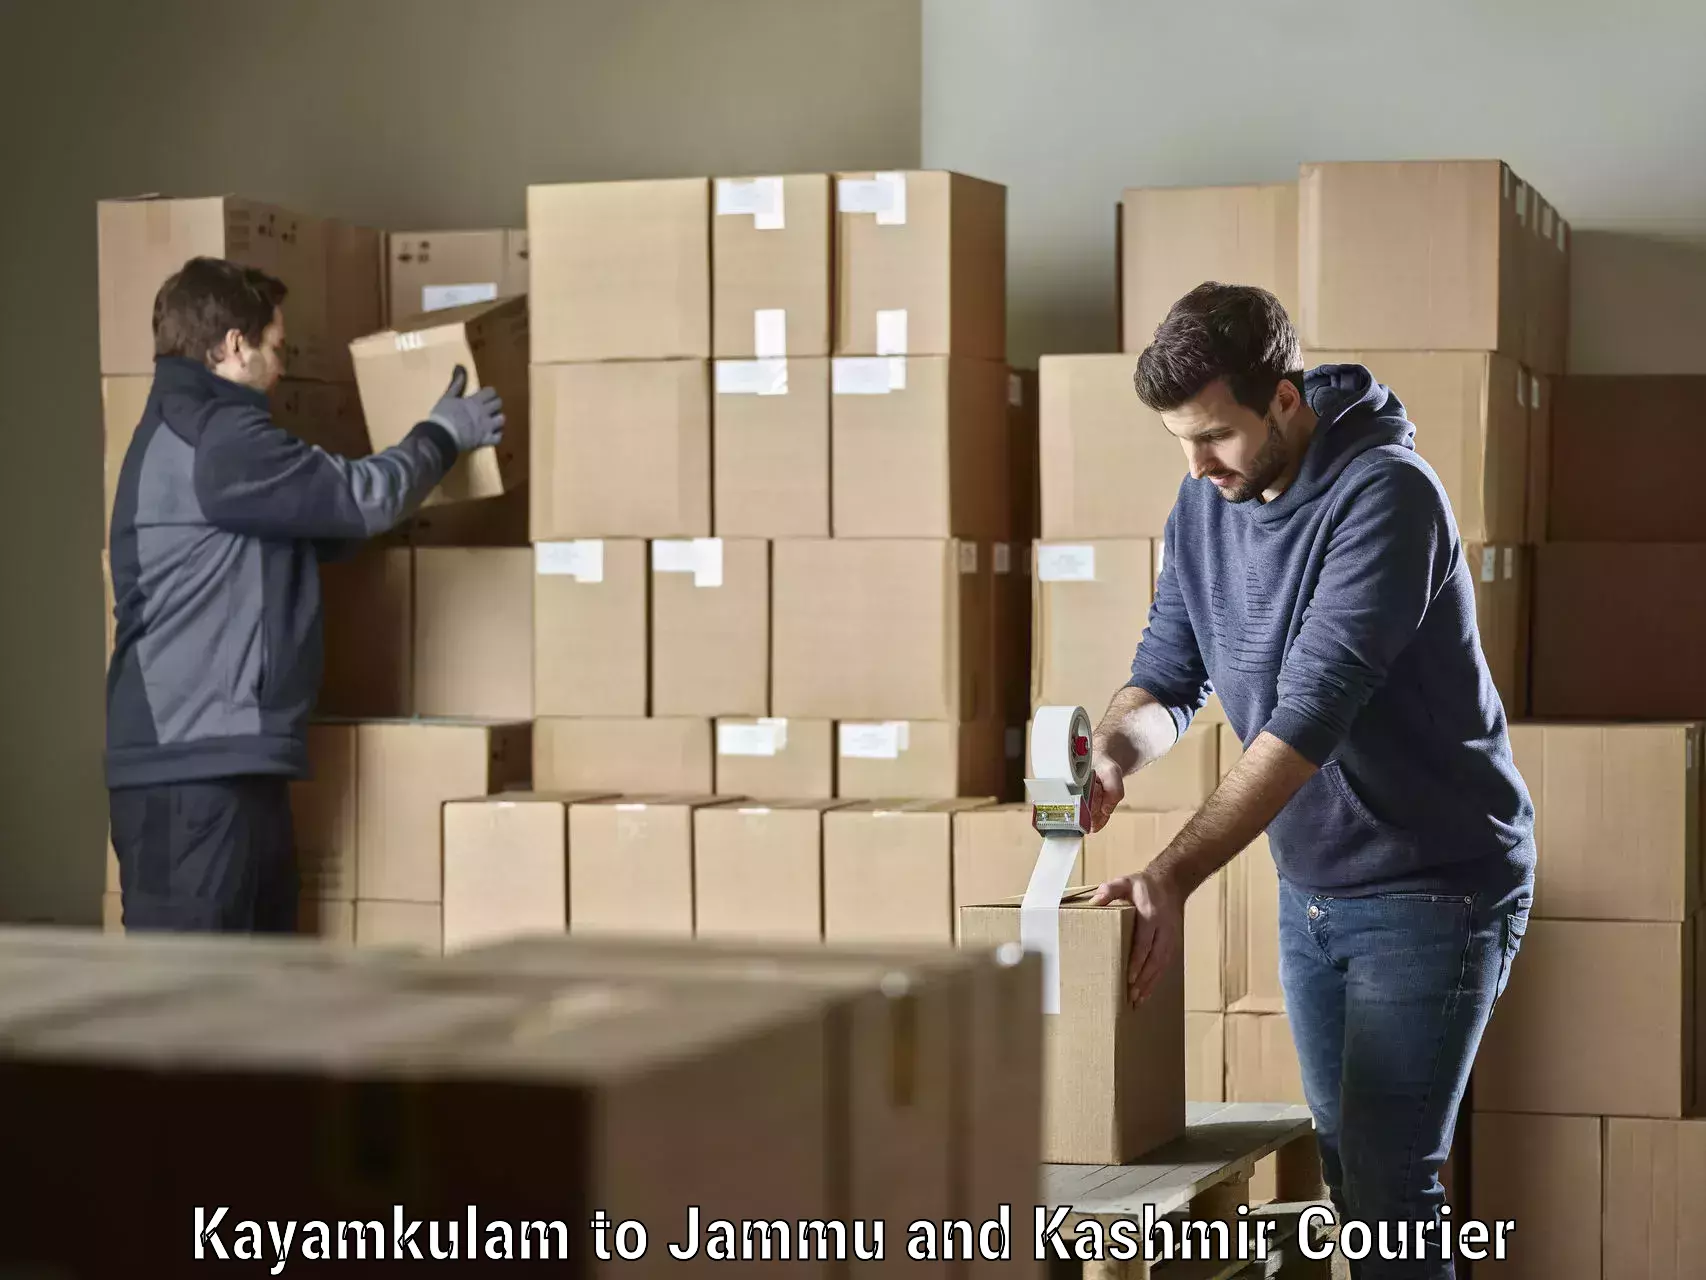 Next-generation courier services Kayamkulam to Kulgam